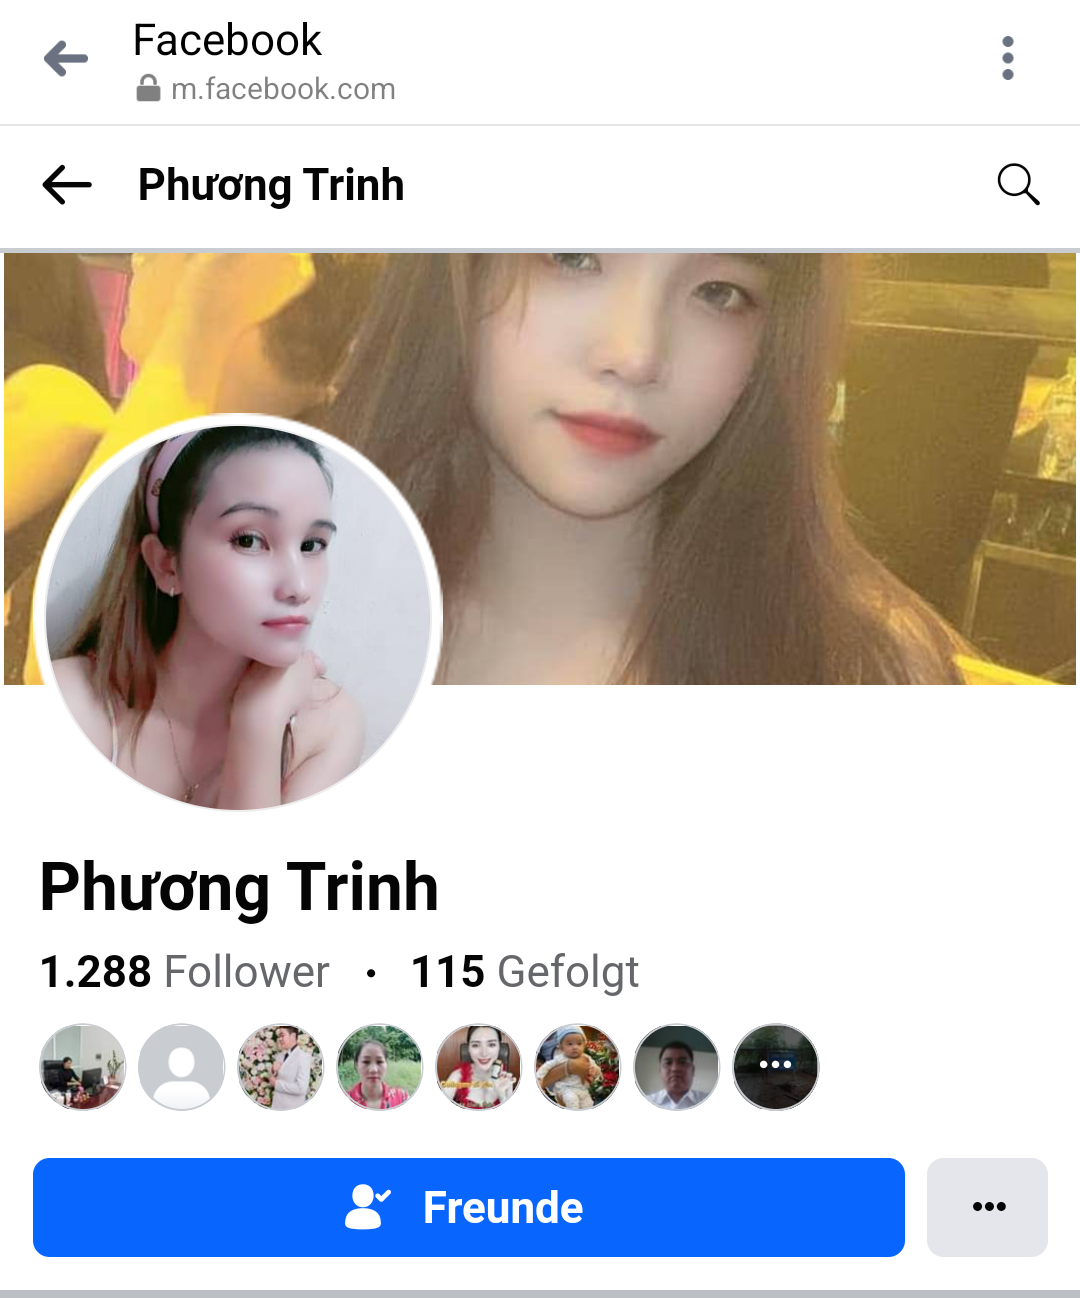 Vietnamese HCMC girl FB leaked, married (face reveal/full pics soon) #9J5E9rJ0